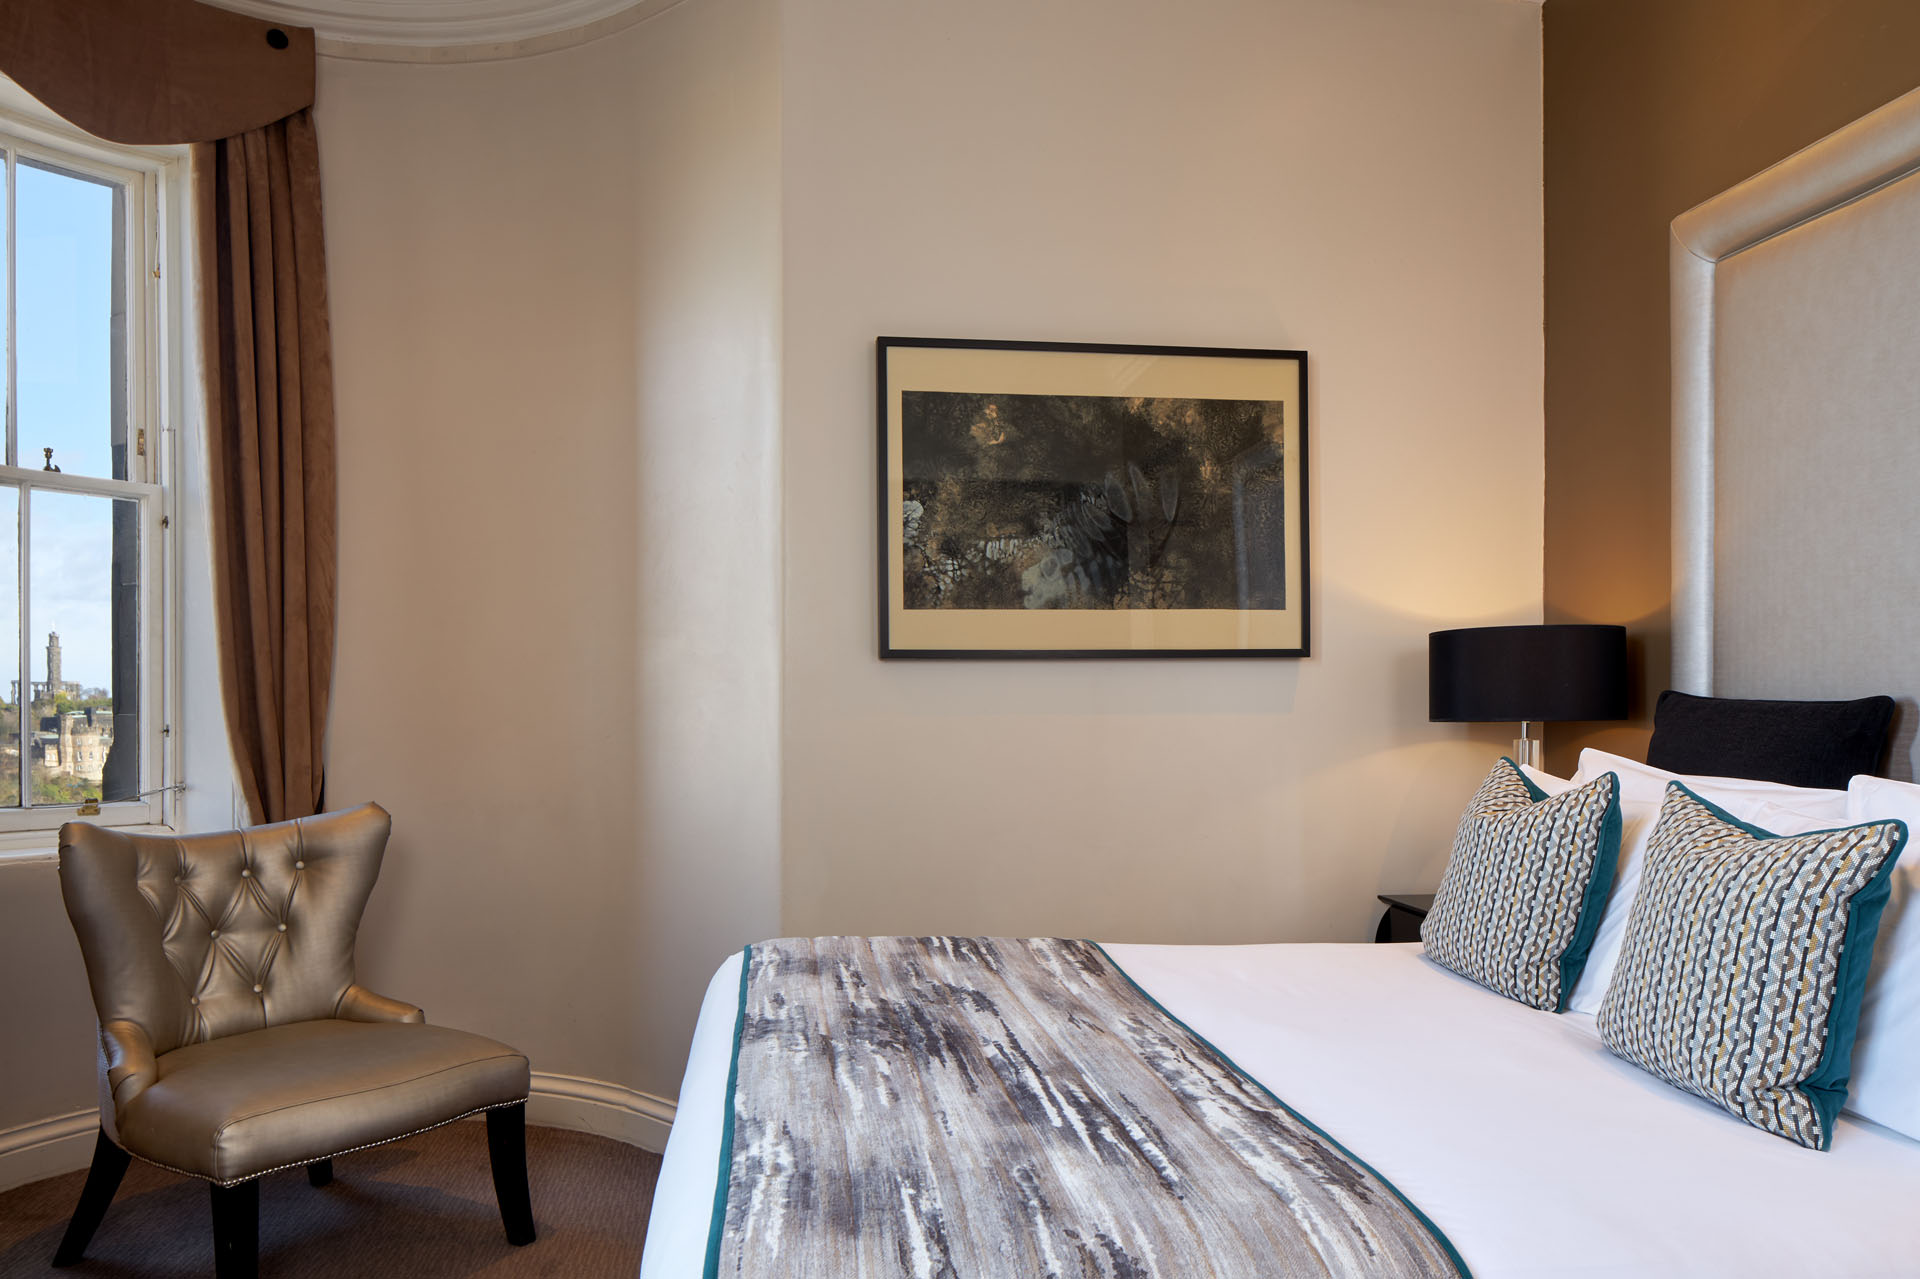 Overview of hotel suites in Fraser Suites Edinburgh